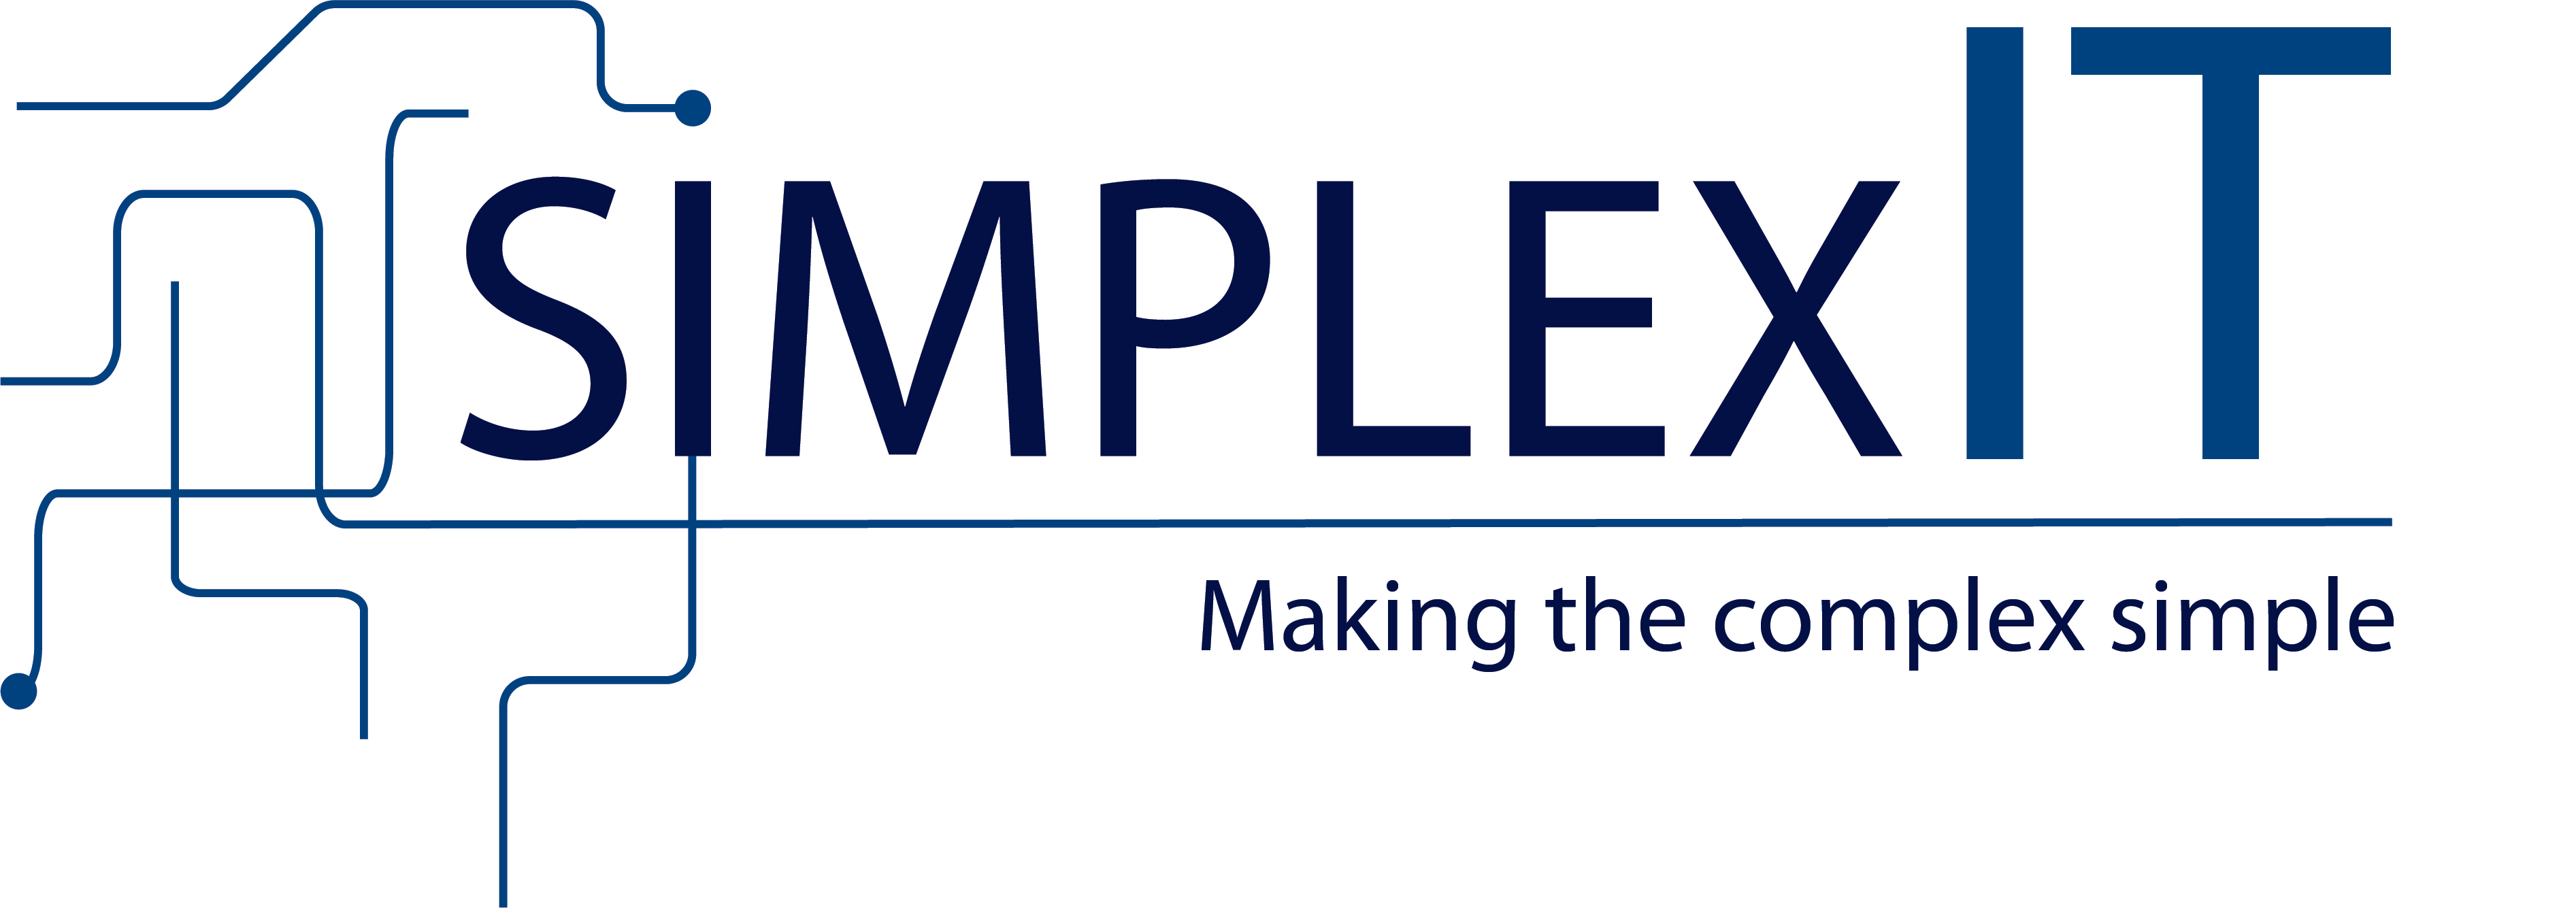 computerherstellers Humbeek simplexIT